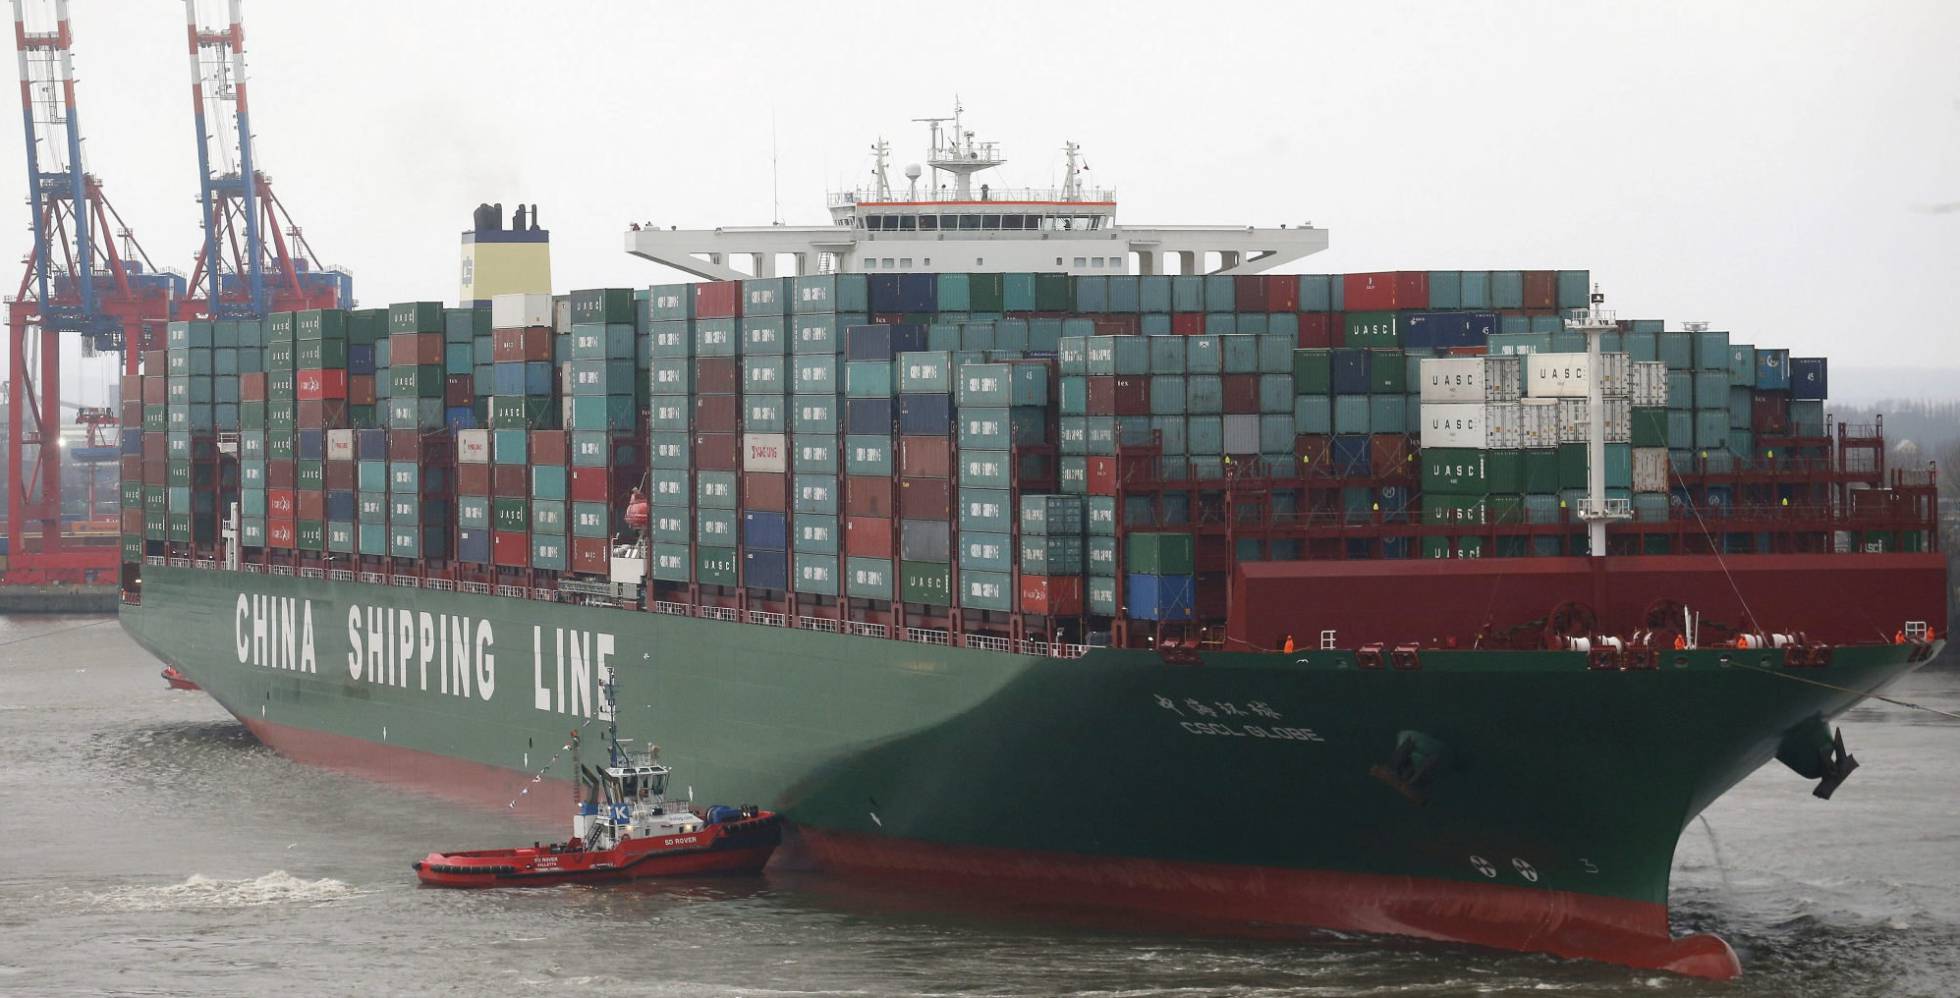 Comercio y transporte marítimo. El barco contenedor más grande del mundo, el CSCL Globe de la compañía China Shipping Group 1479469895_428413_1479470499_noticia_normal_recorte1